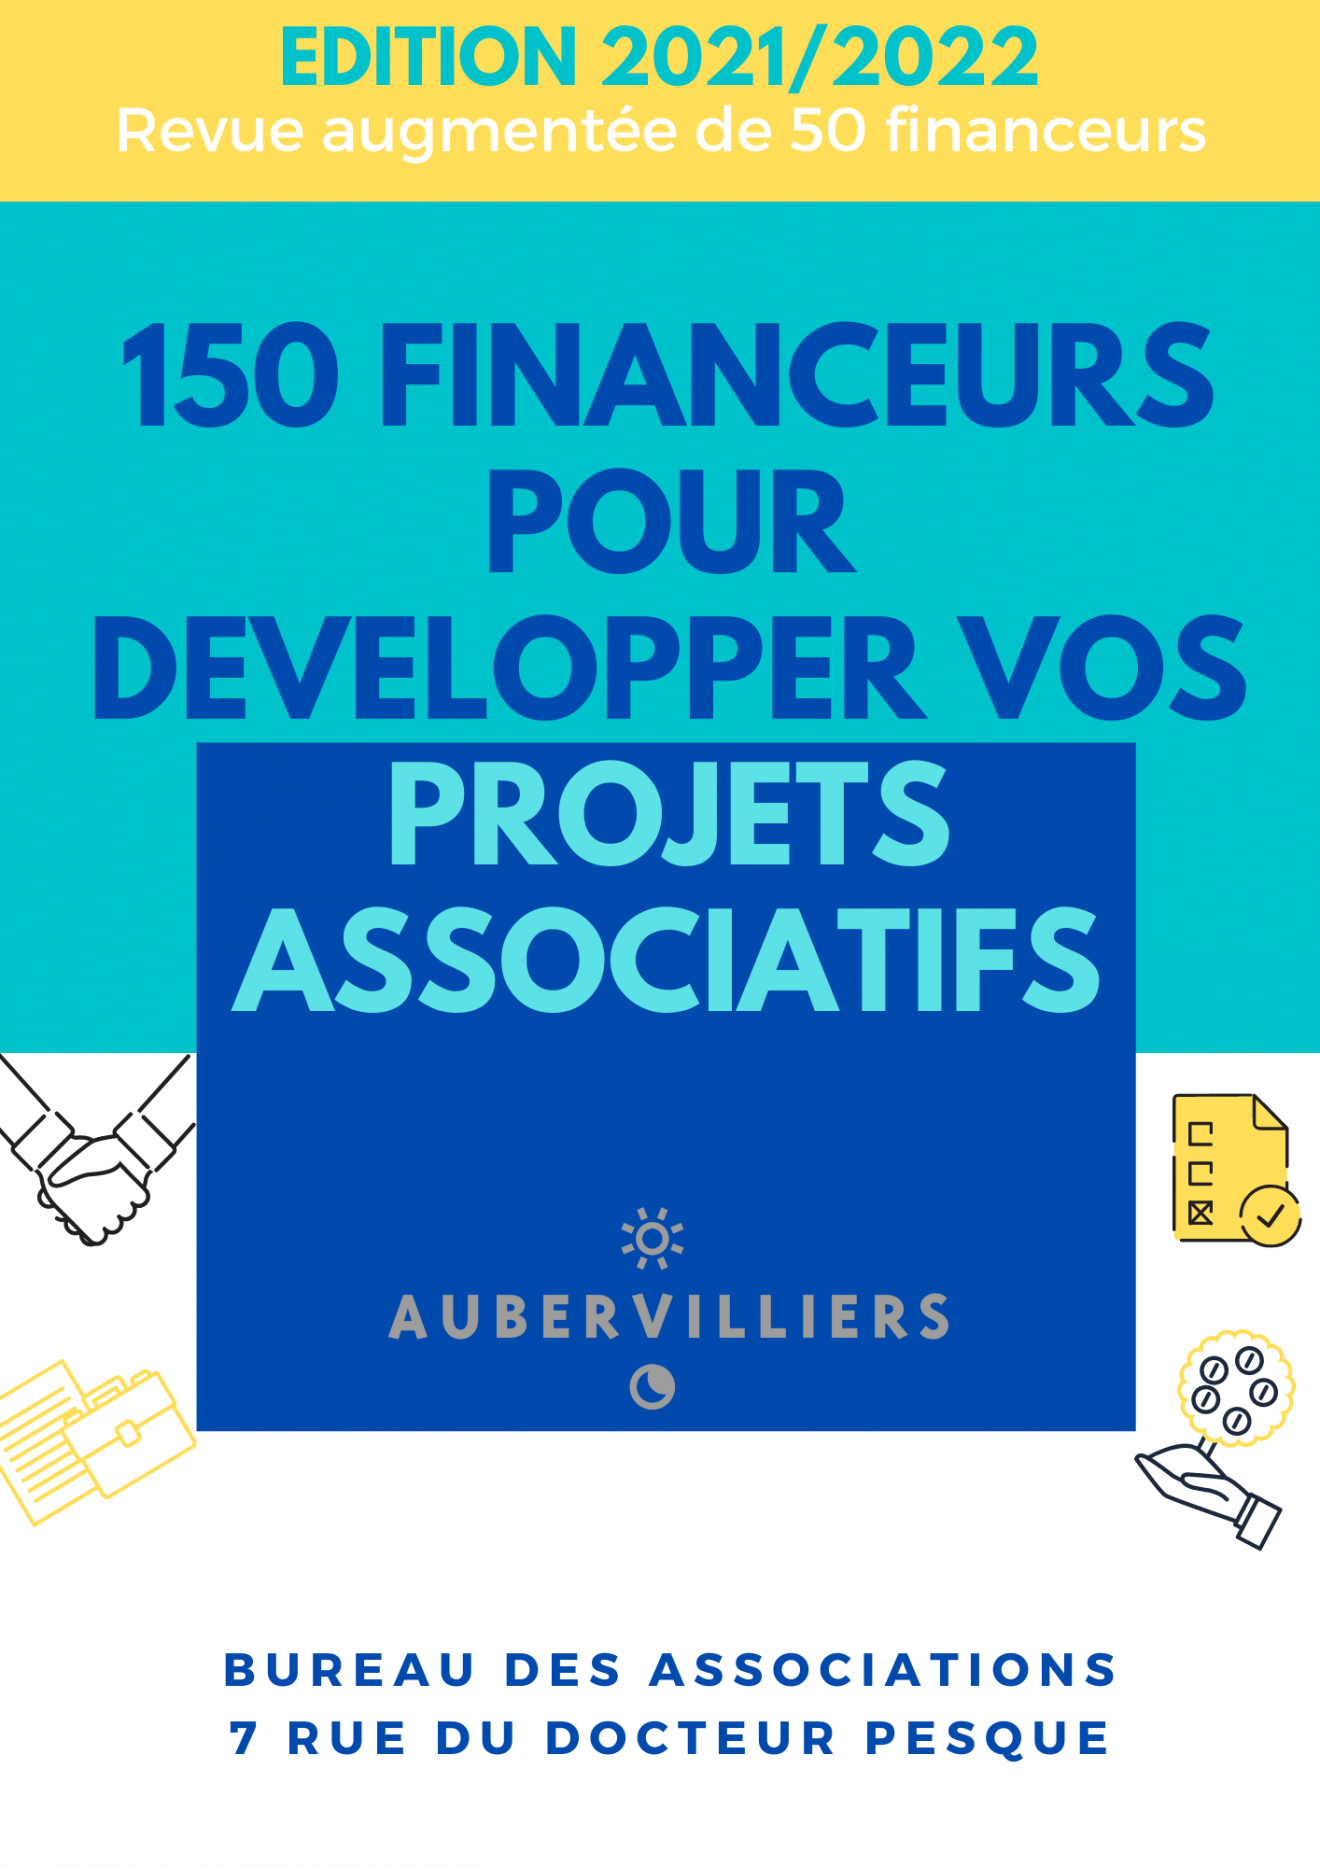 Revue d'appels à projets 150 financeurs édition 2021/2022 - Service Vie Associative Ville d'Aubervilliers